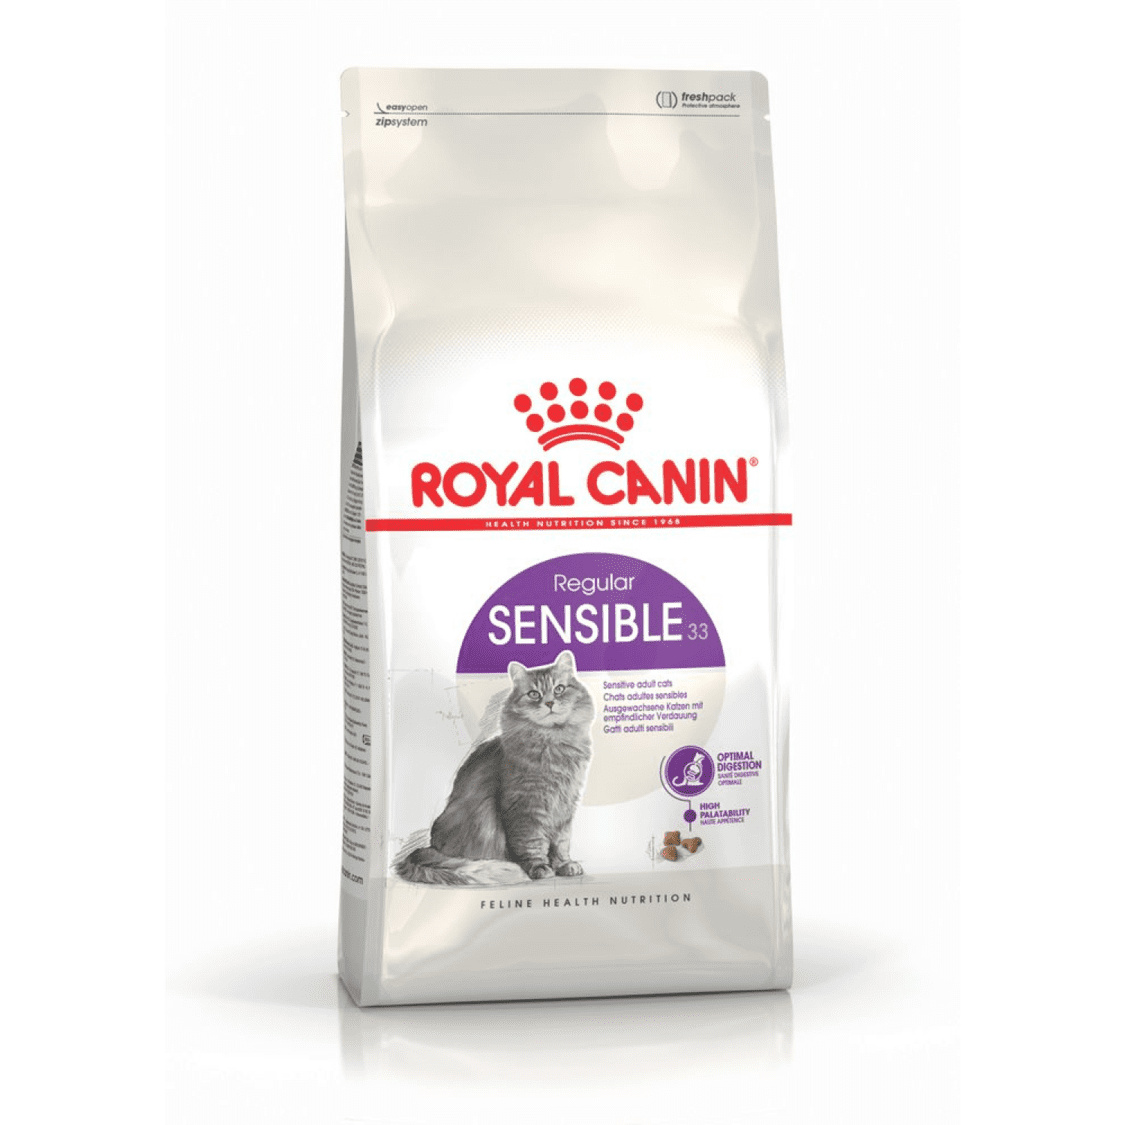 Royal Canin Корм Royal Canin корм для кошек с чувствительным пищеварением (1-7 лет) (15 кг) royal canin royal canin корм для кастрированных кошек и котов 1 7 лет 1 2 кг